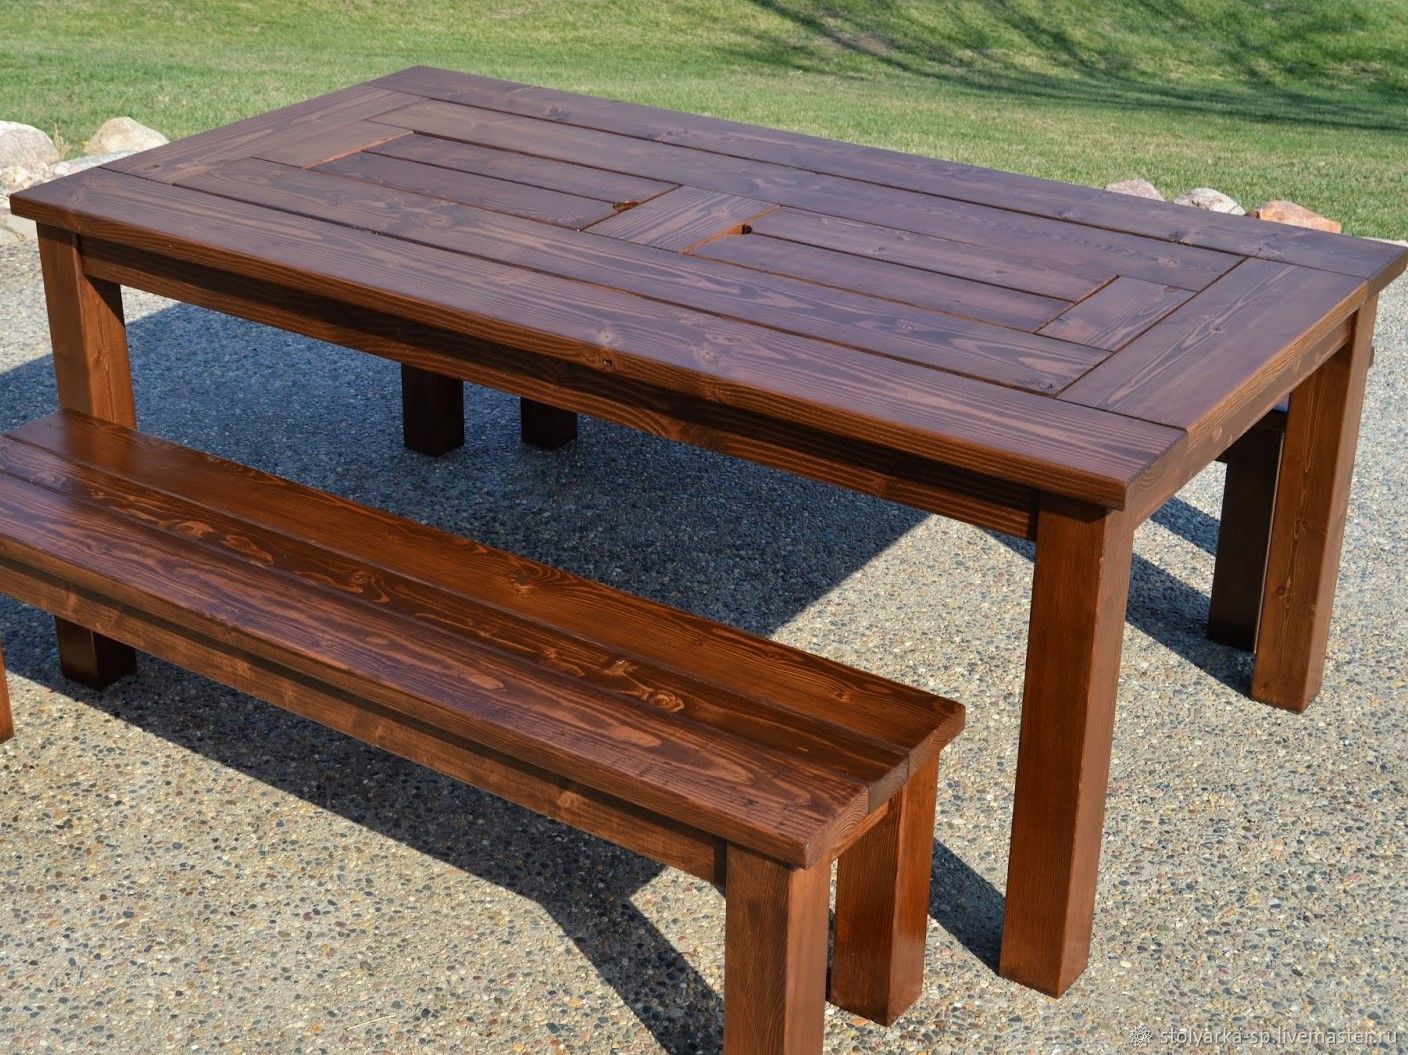 Деревянные столы из массива для дачи